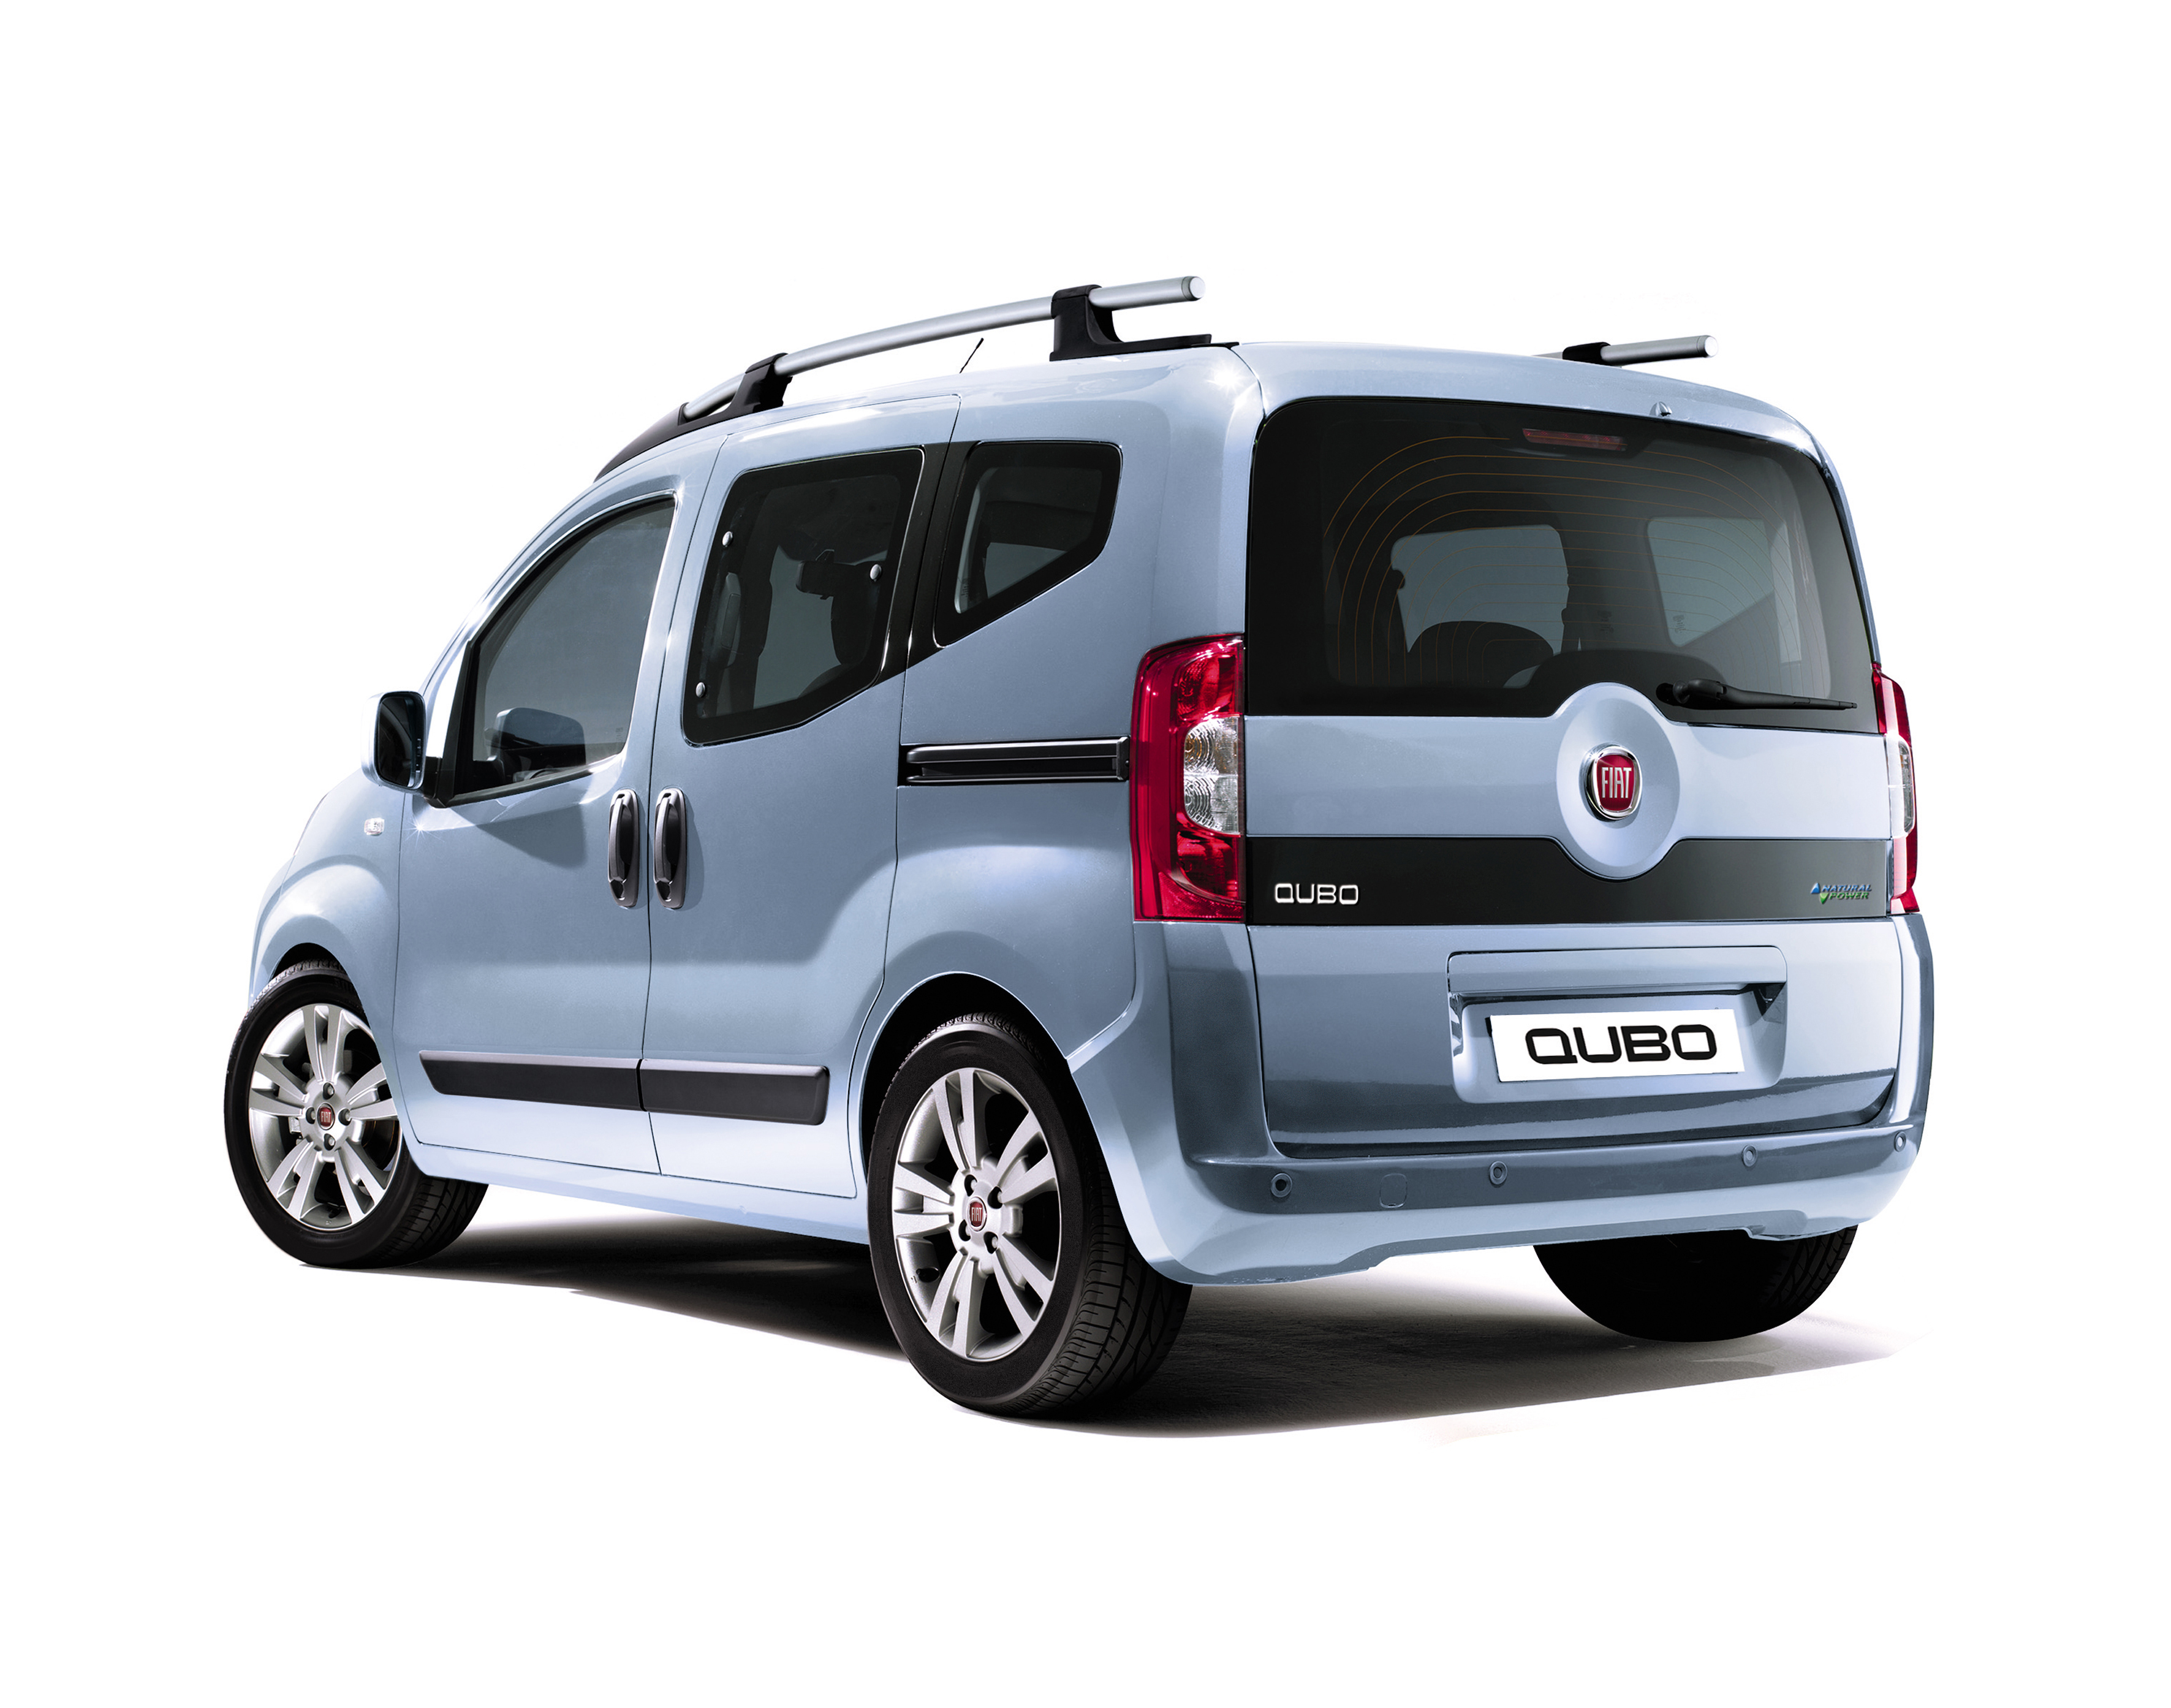 Fiat Qubo exterior model